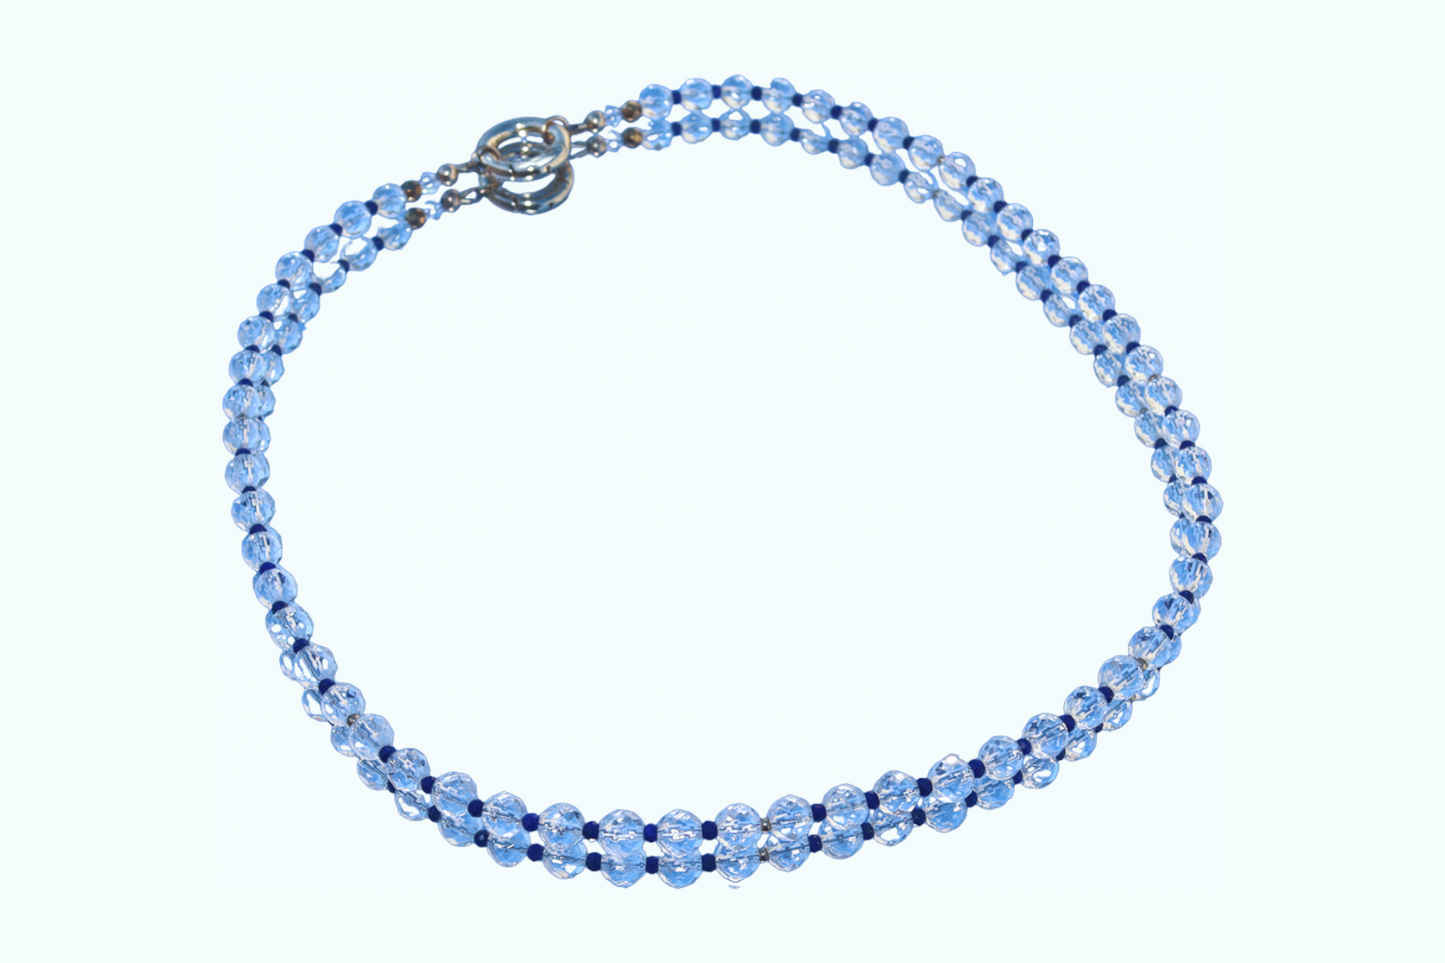 Clear Quartz & Lapis Lazuli Necklace w/ Gold Filled Accents